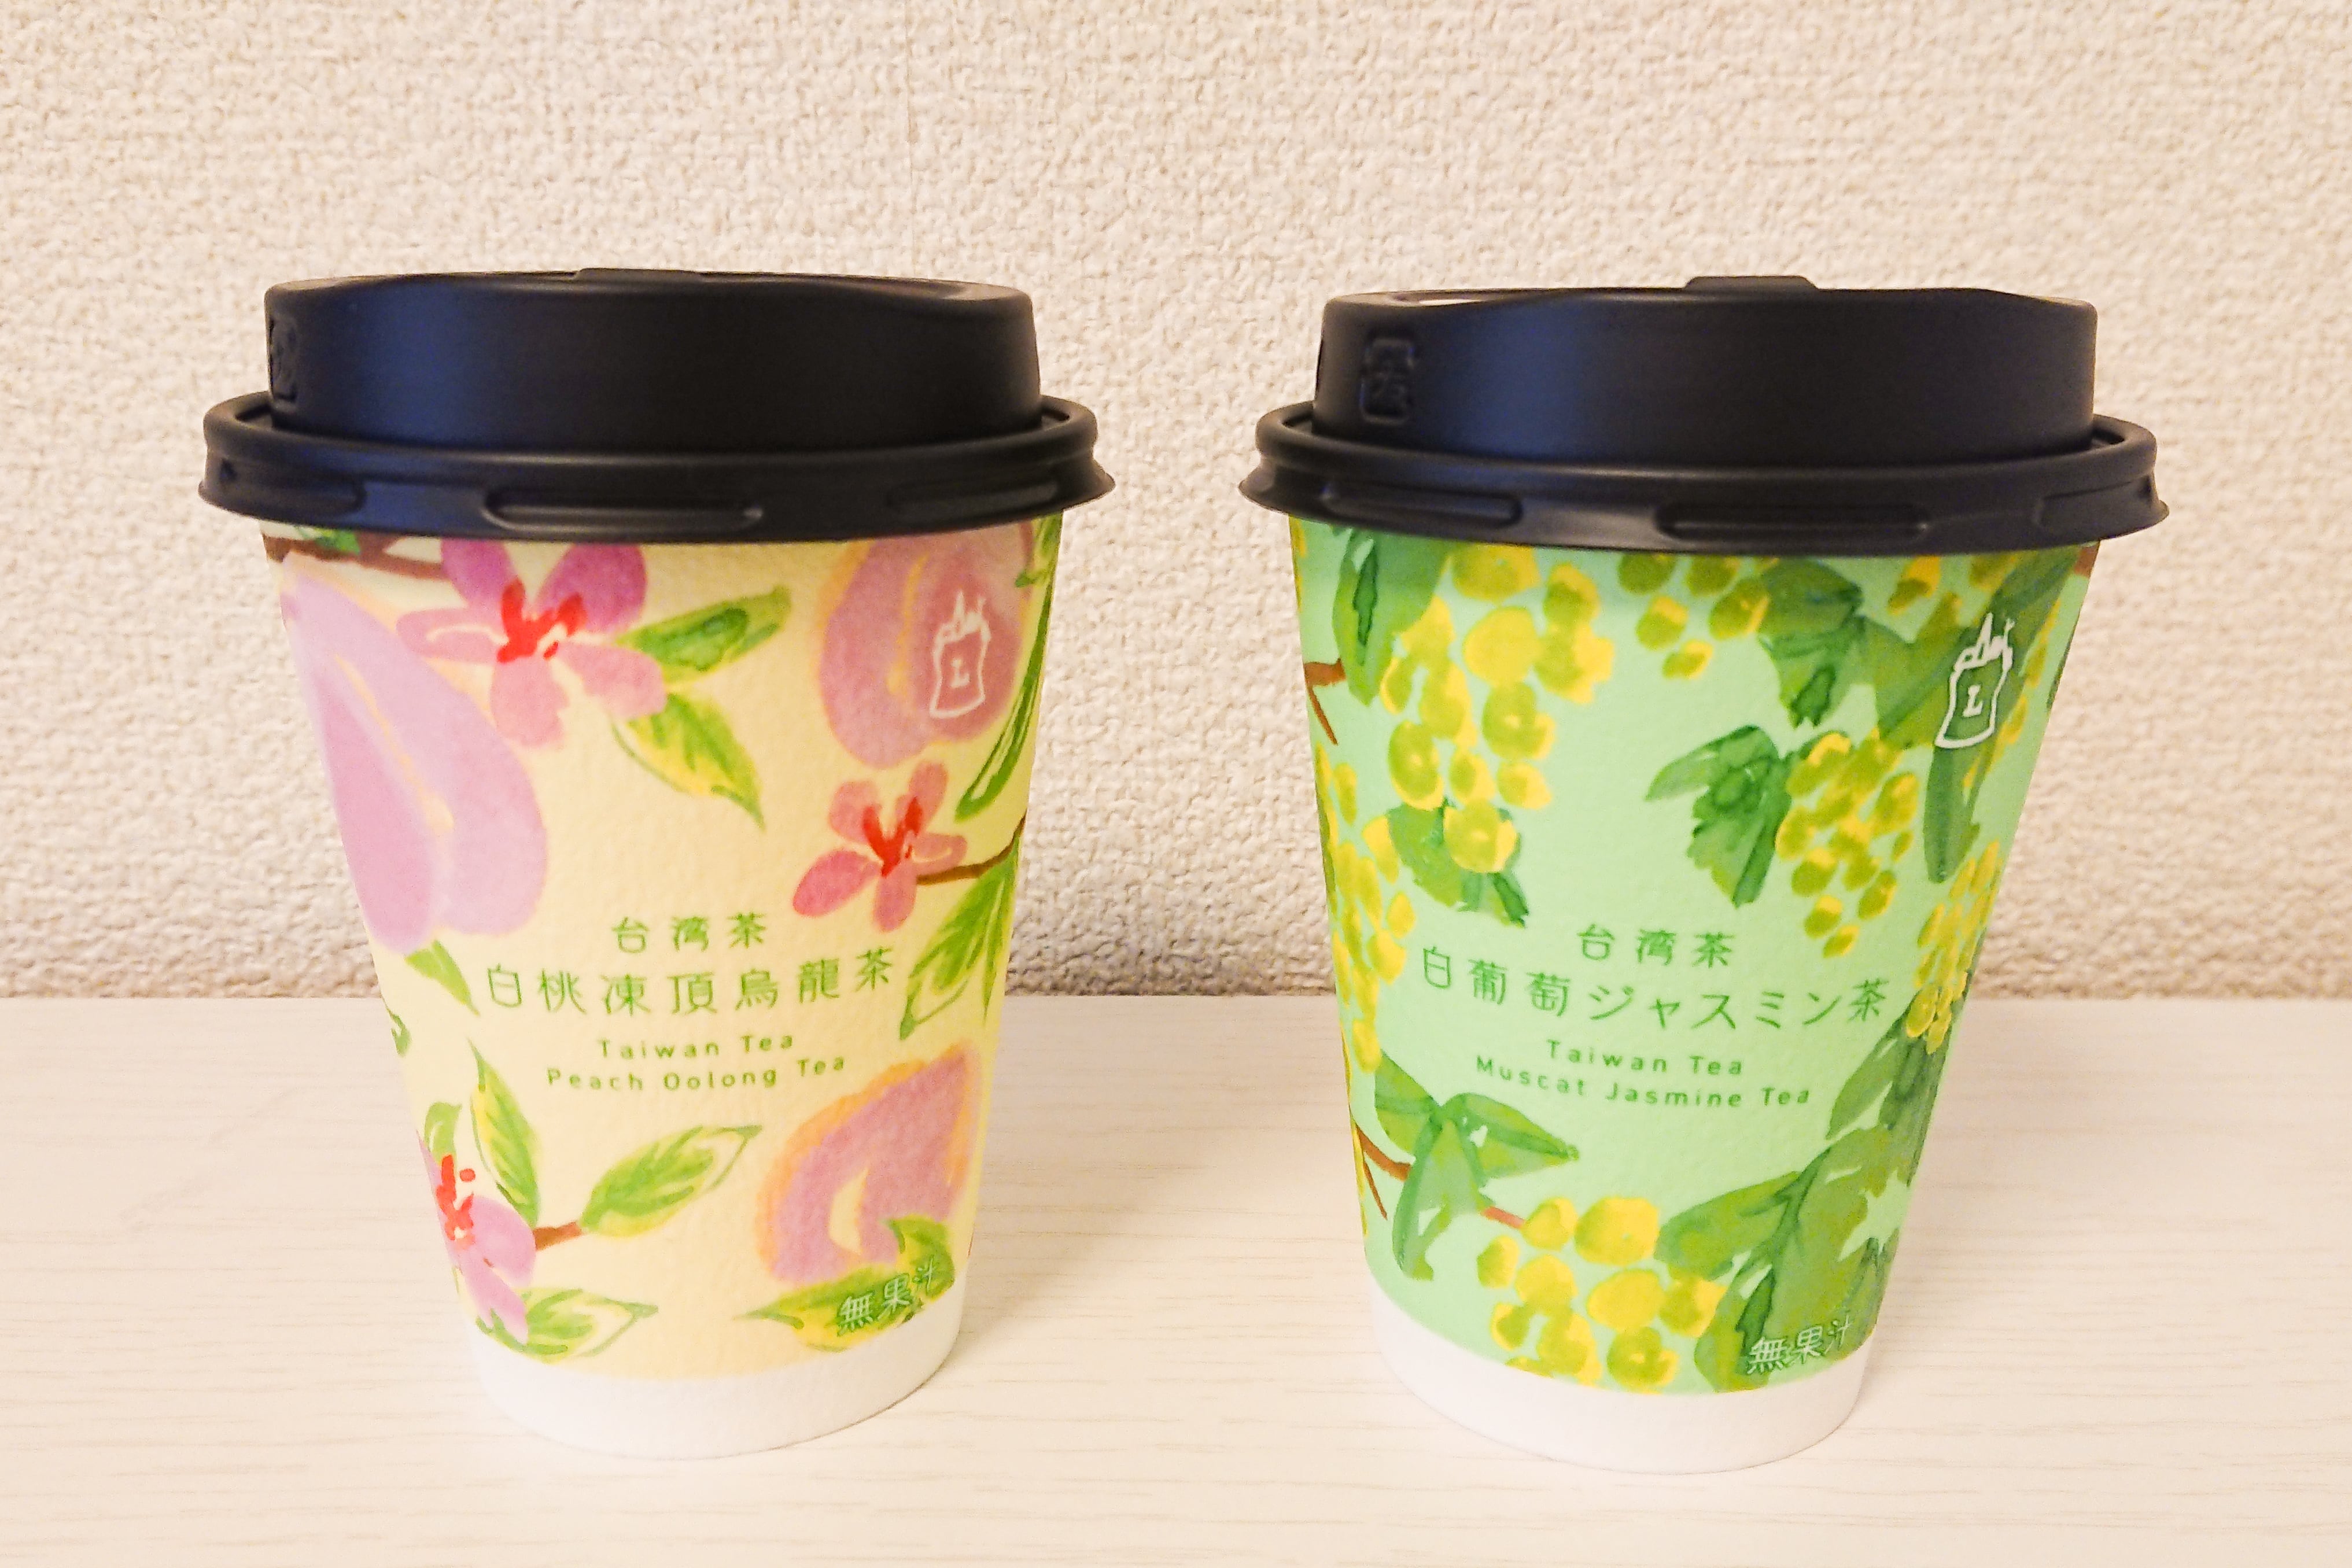 ローソン 話題の新商品 台湾茶 時間とともに変化する味に驚いた Sirabee